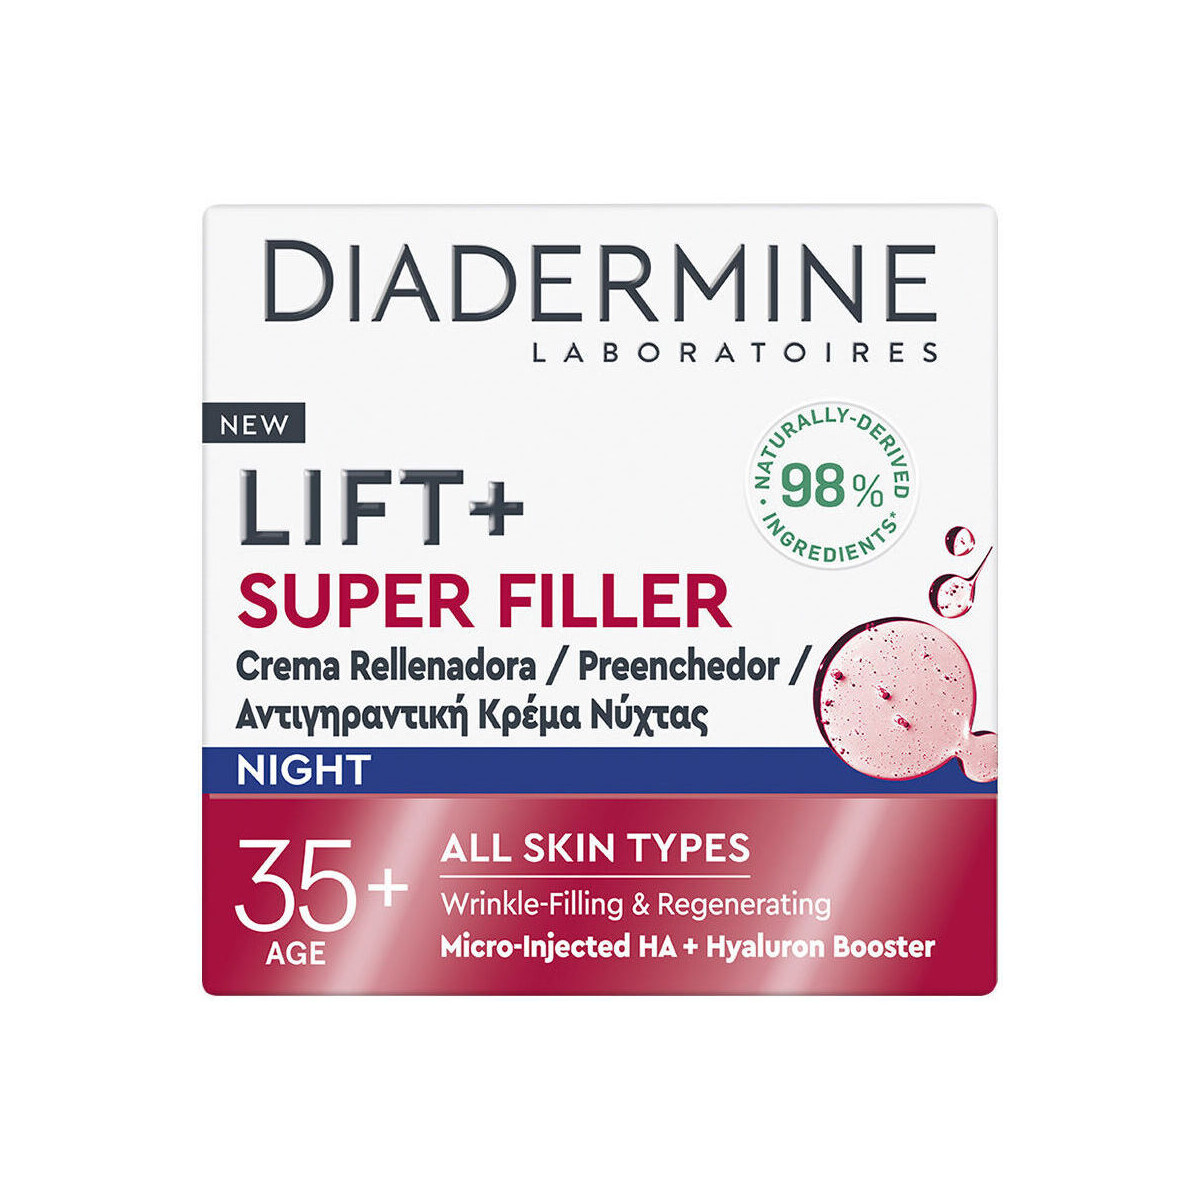 Bellezza Antietà & Antirughe Diadermine Lift + Super Filler Crema Notte Rimpolpante 